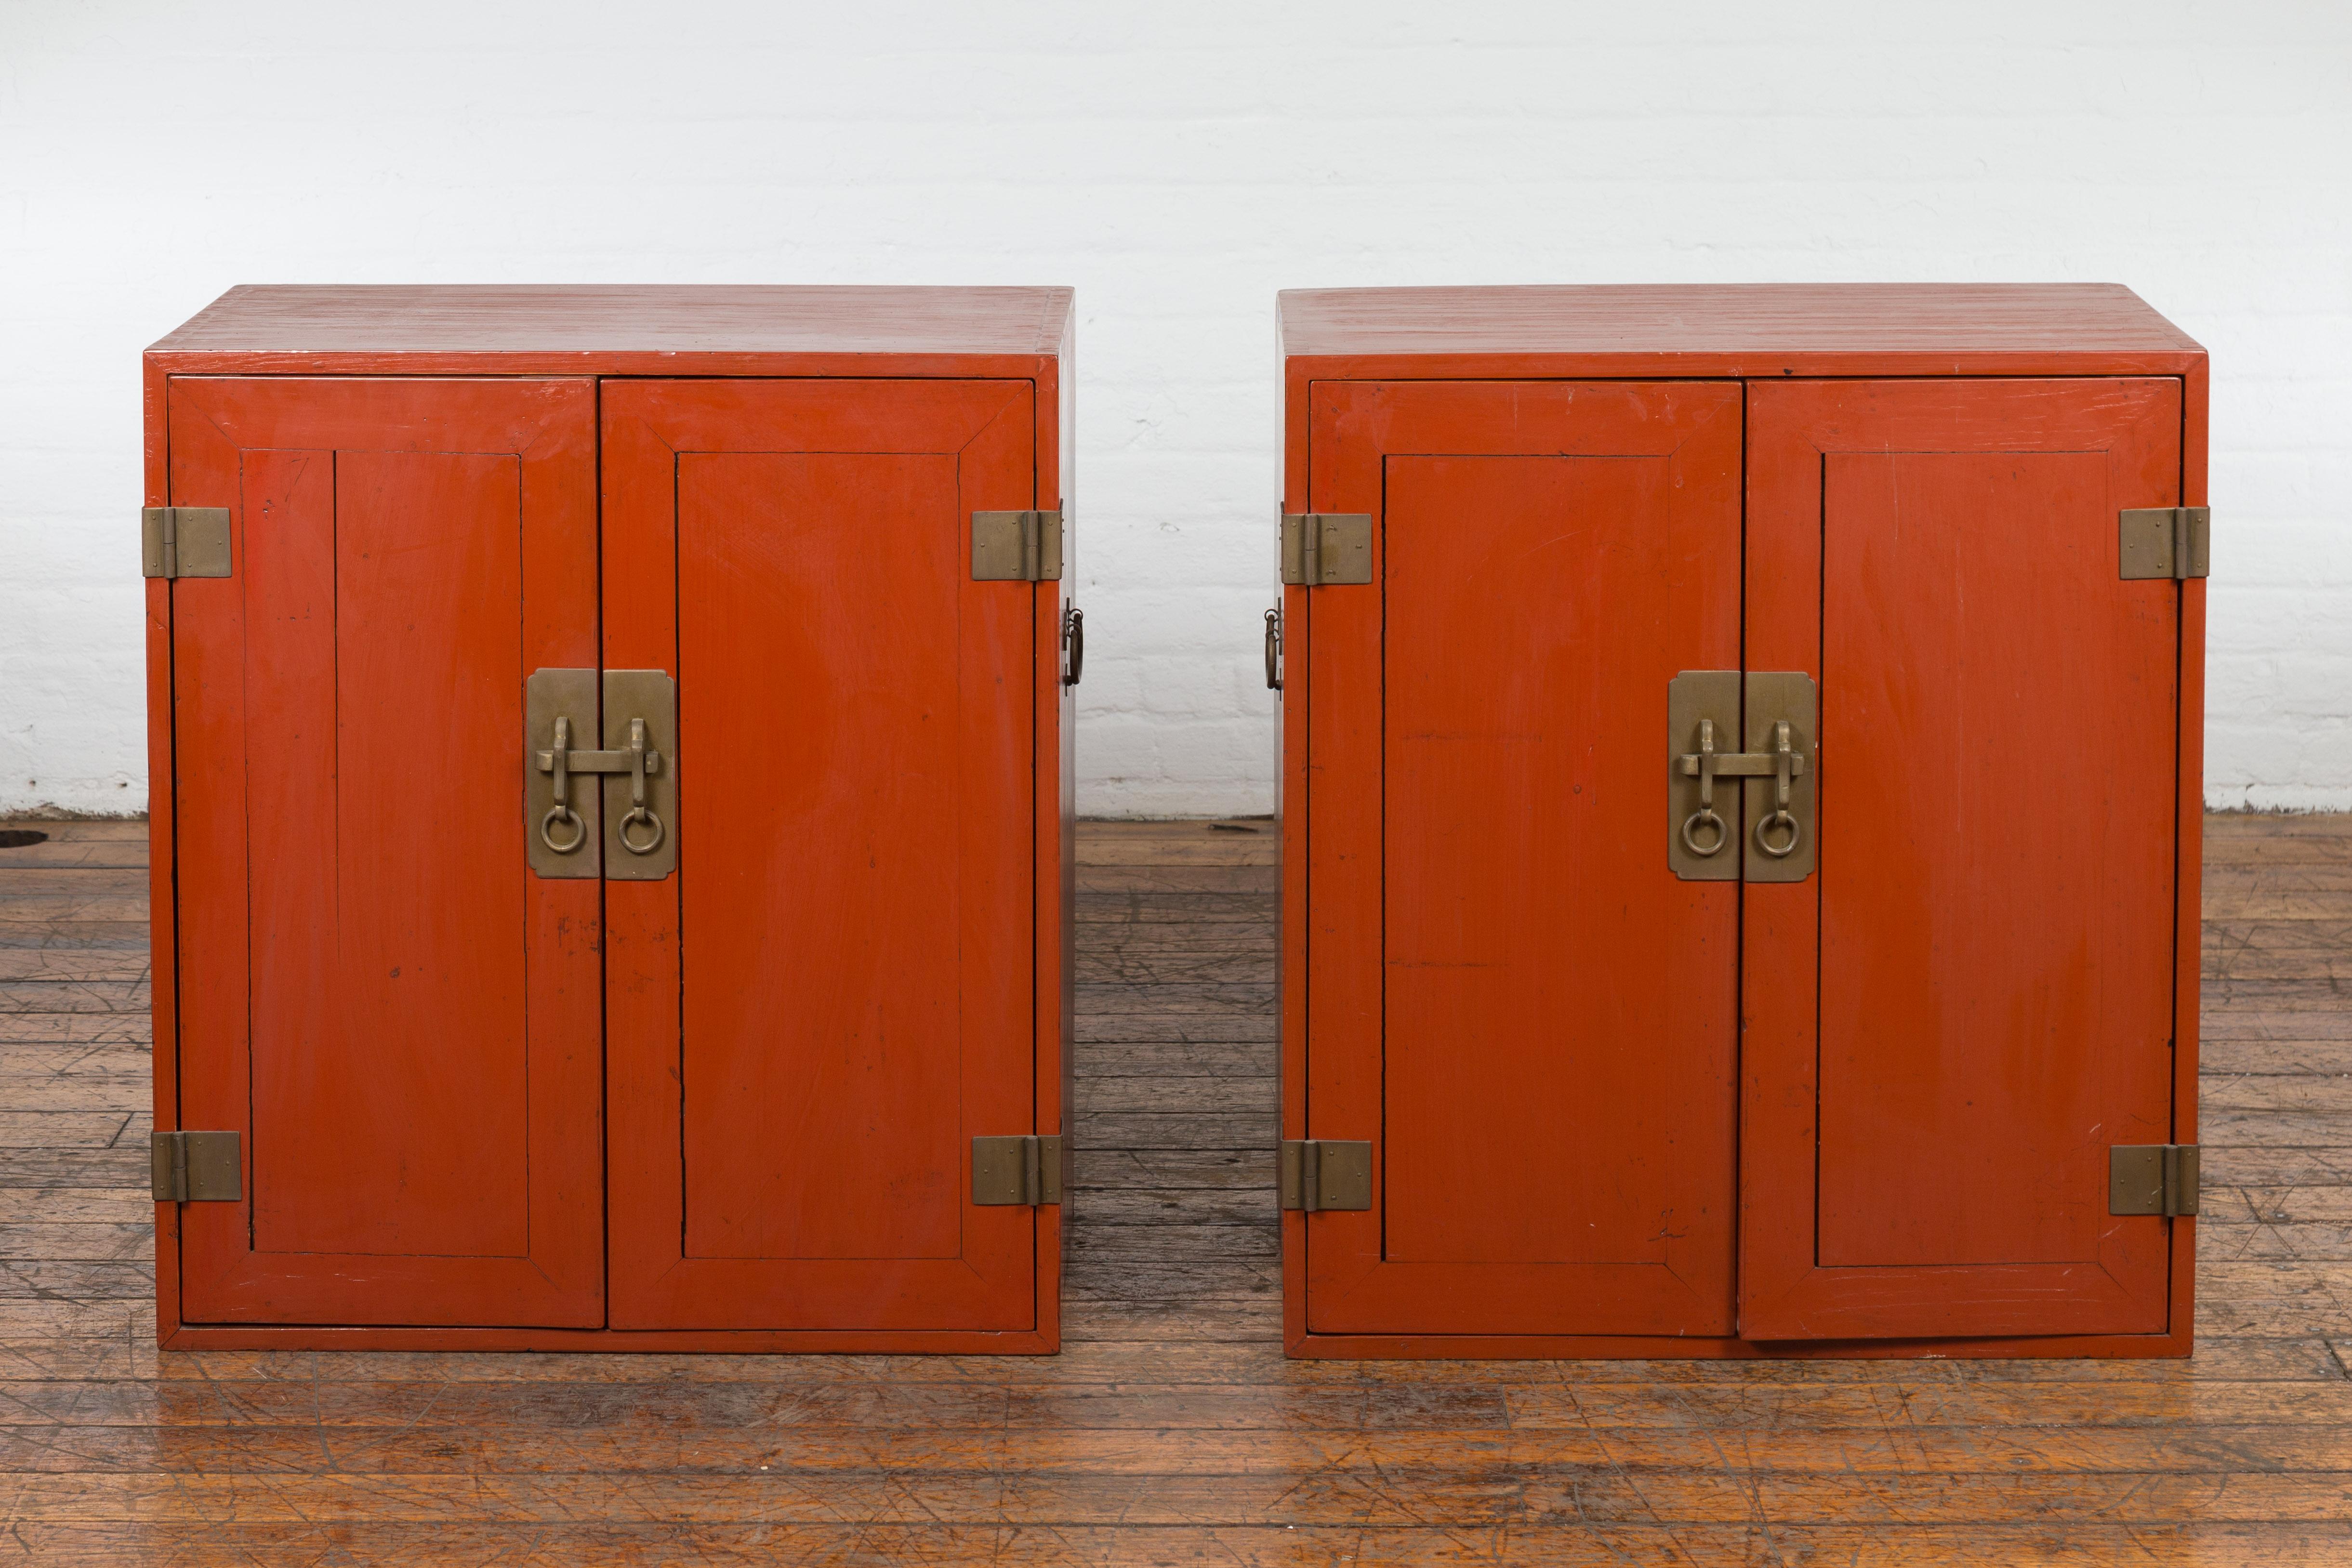 Une paire d'armoires chinoises vintage du milieu du 20e siècle, avec une finition en laque rouge, des paires de portes doubles, quatre boîtes intérieures chacune et une quincaillerie traditionnelle en laiton. Créée en Chine au milieu du XXe siècle,